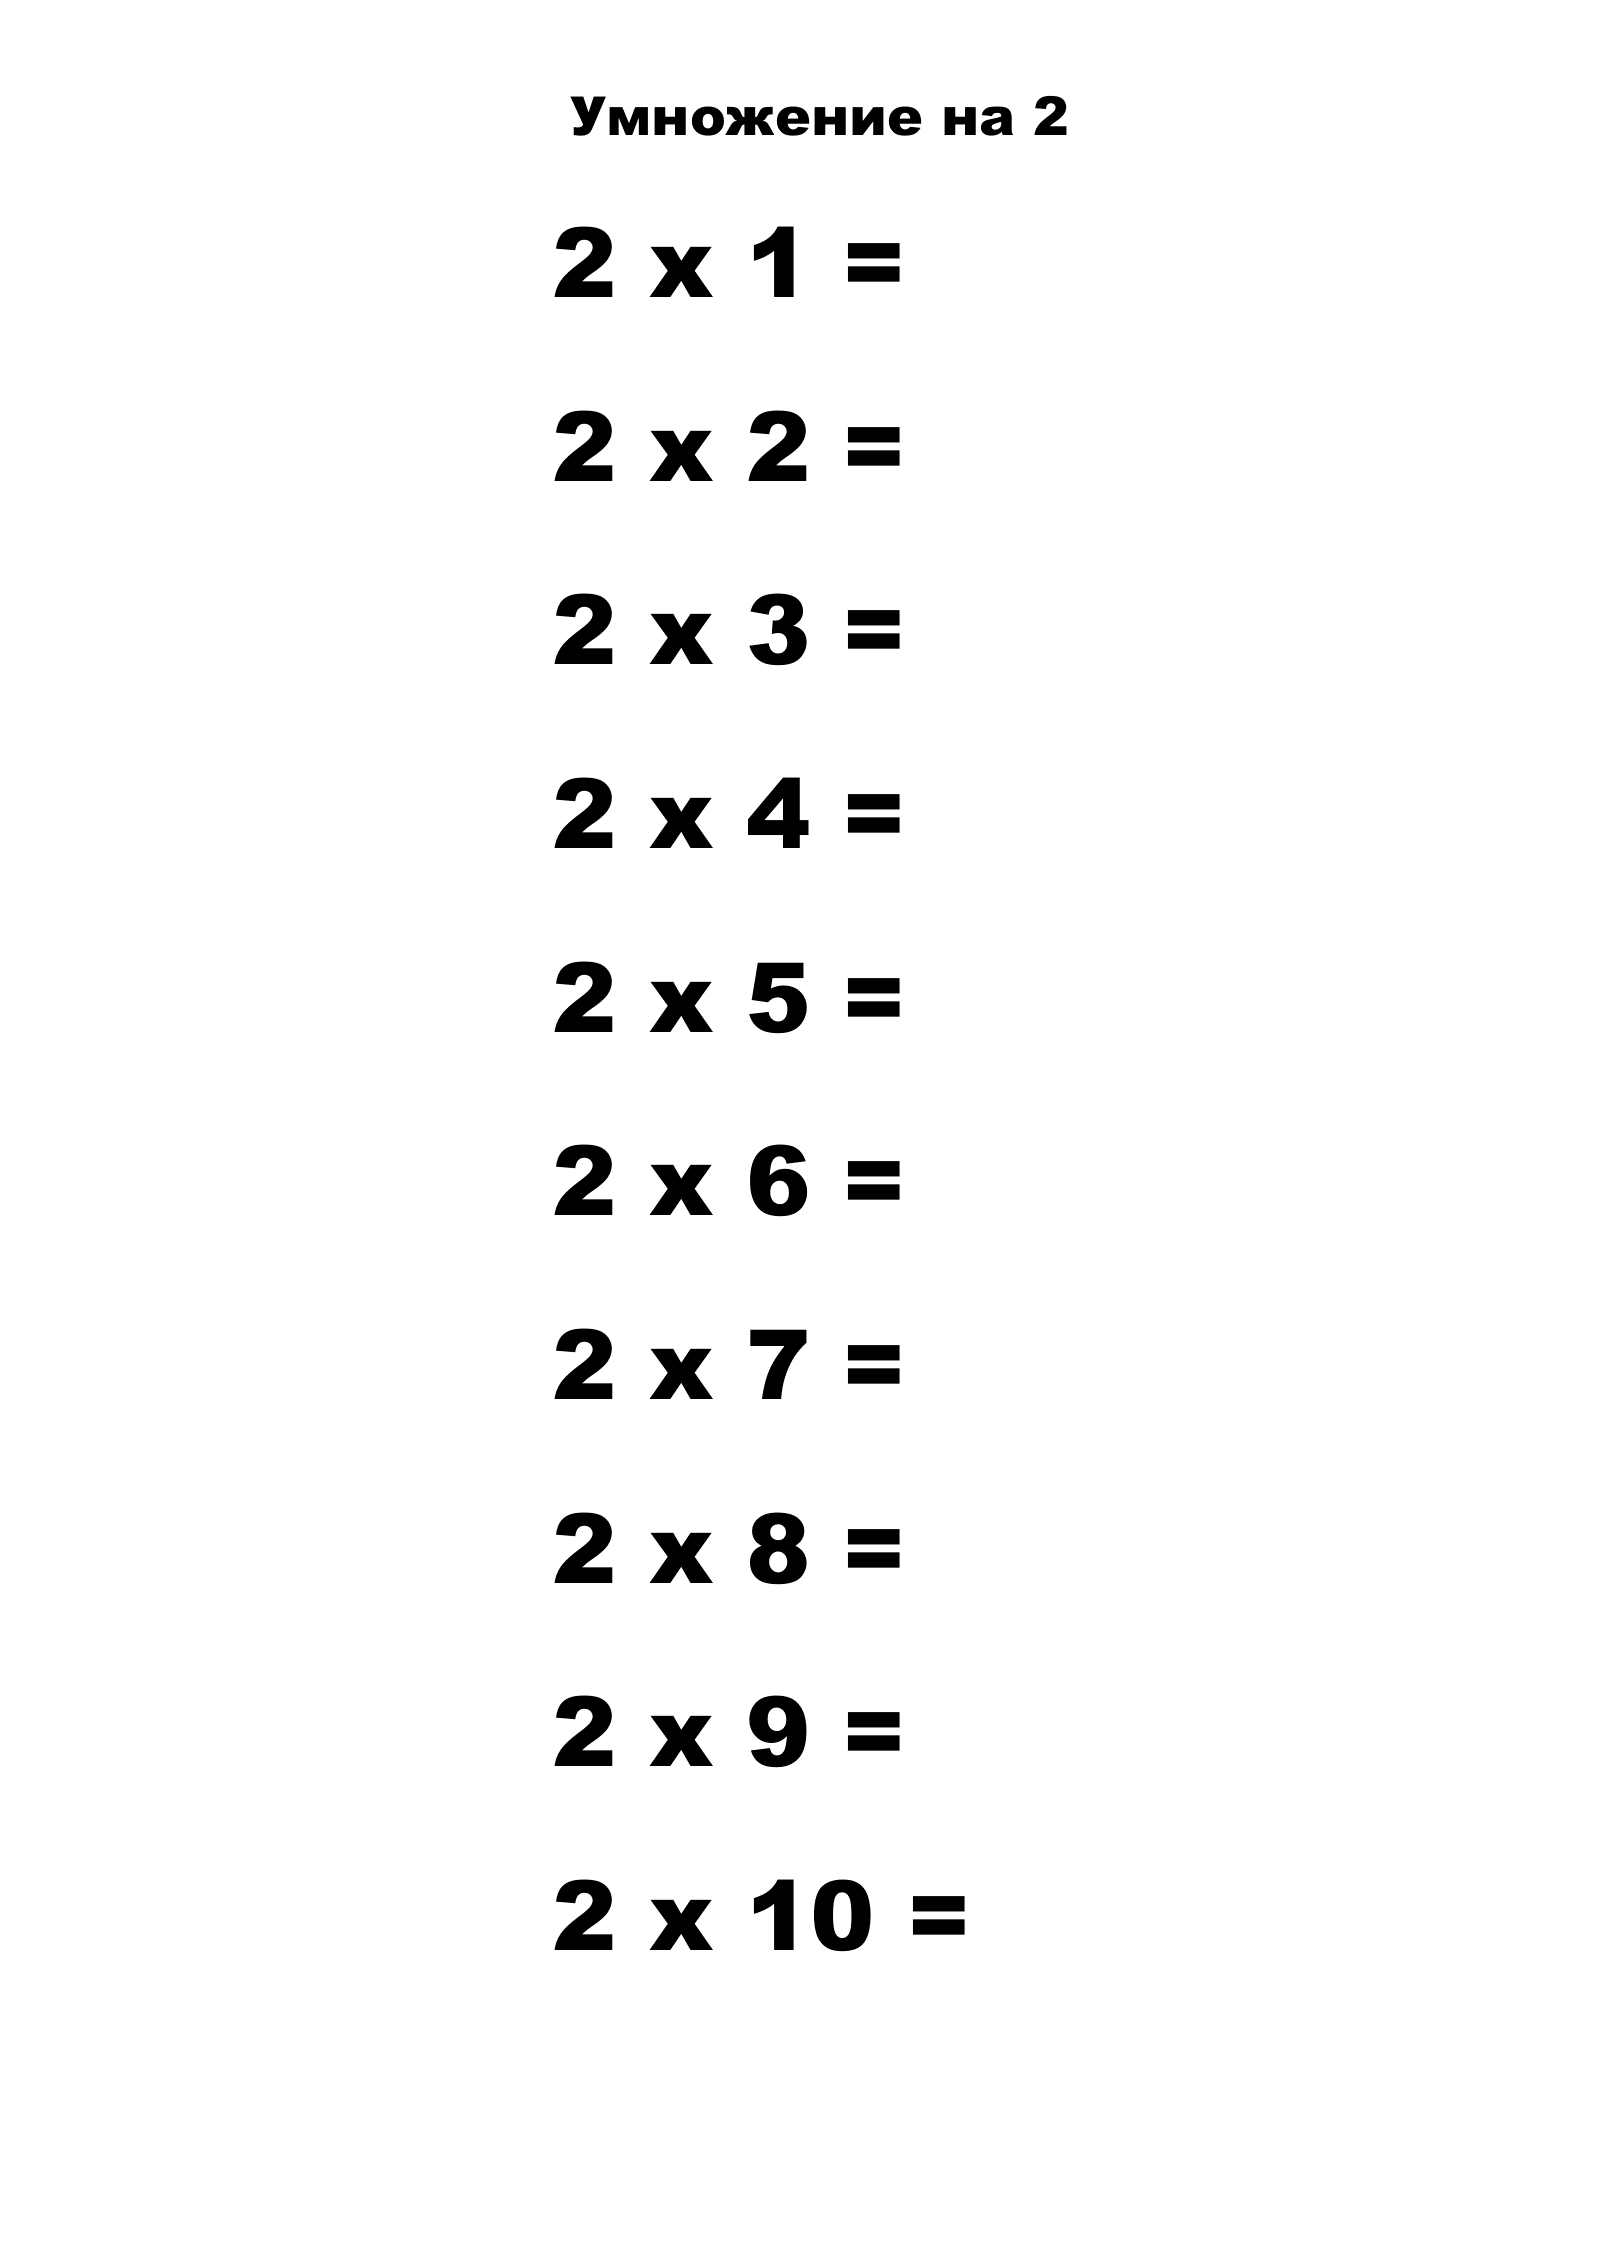 Таблица умножения на 2 без ответов. Распечатать